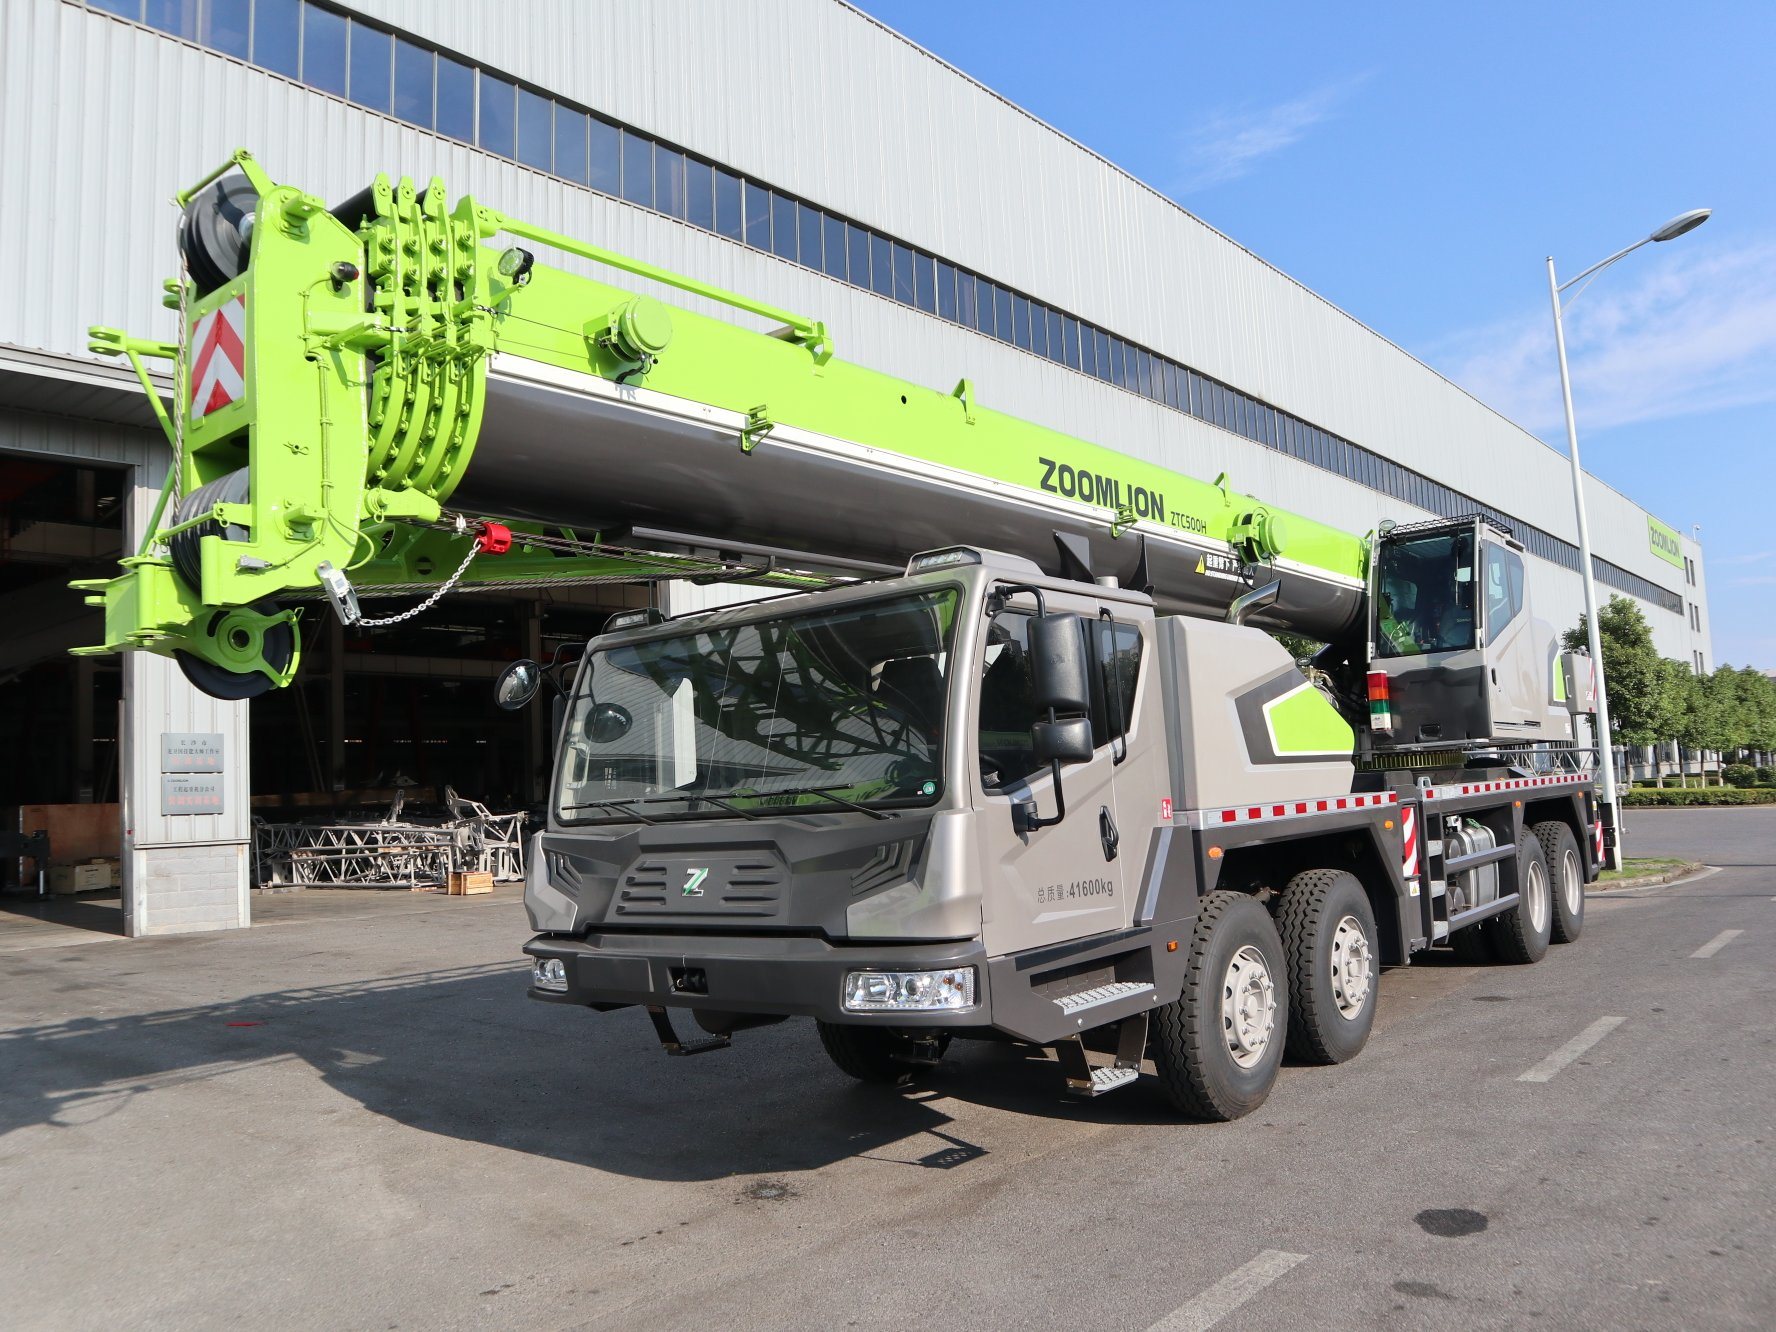 25 Ton Truck Crane – Zoomlion Truck Crane Ztc250 with Three Alex